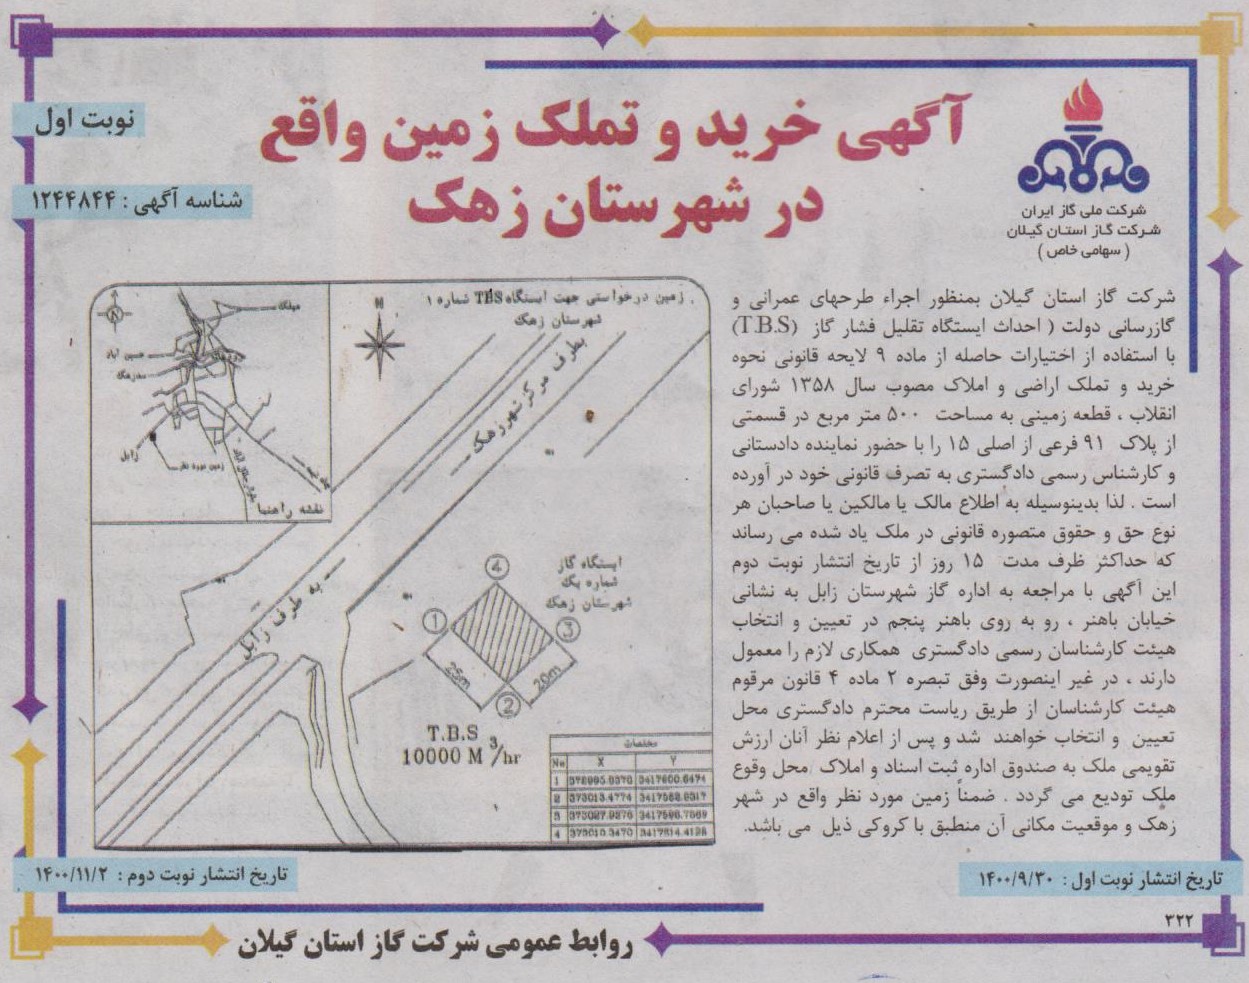 خرید و تملک زمین واقع در شهرستان زهک استان سیستان و بلوچستان - 30 آذر 1400